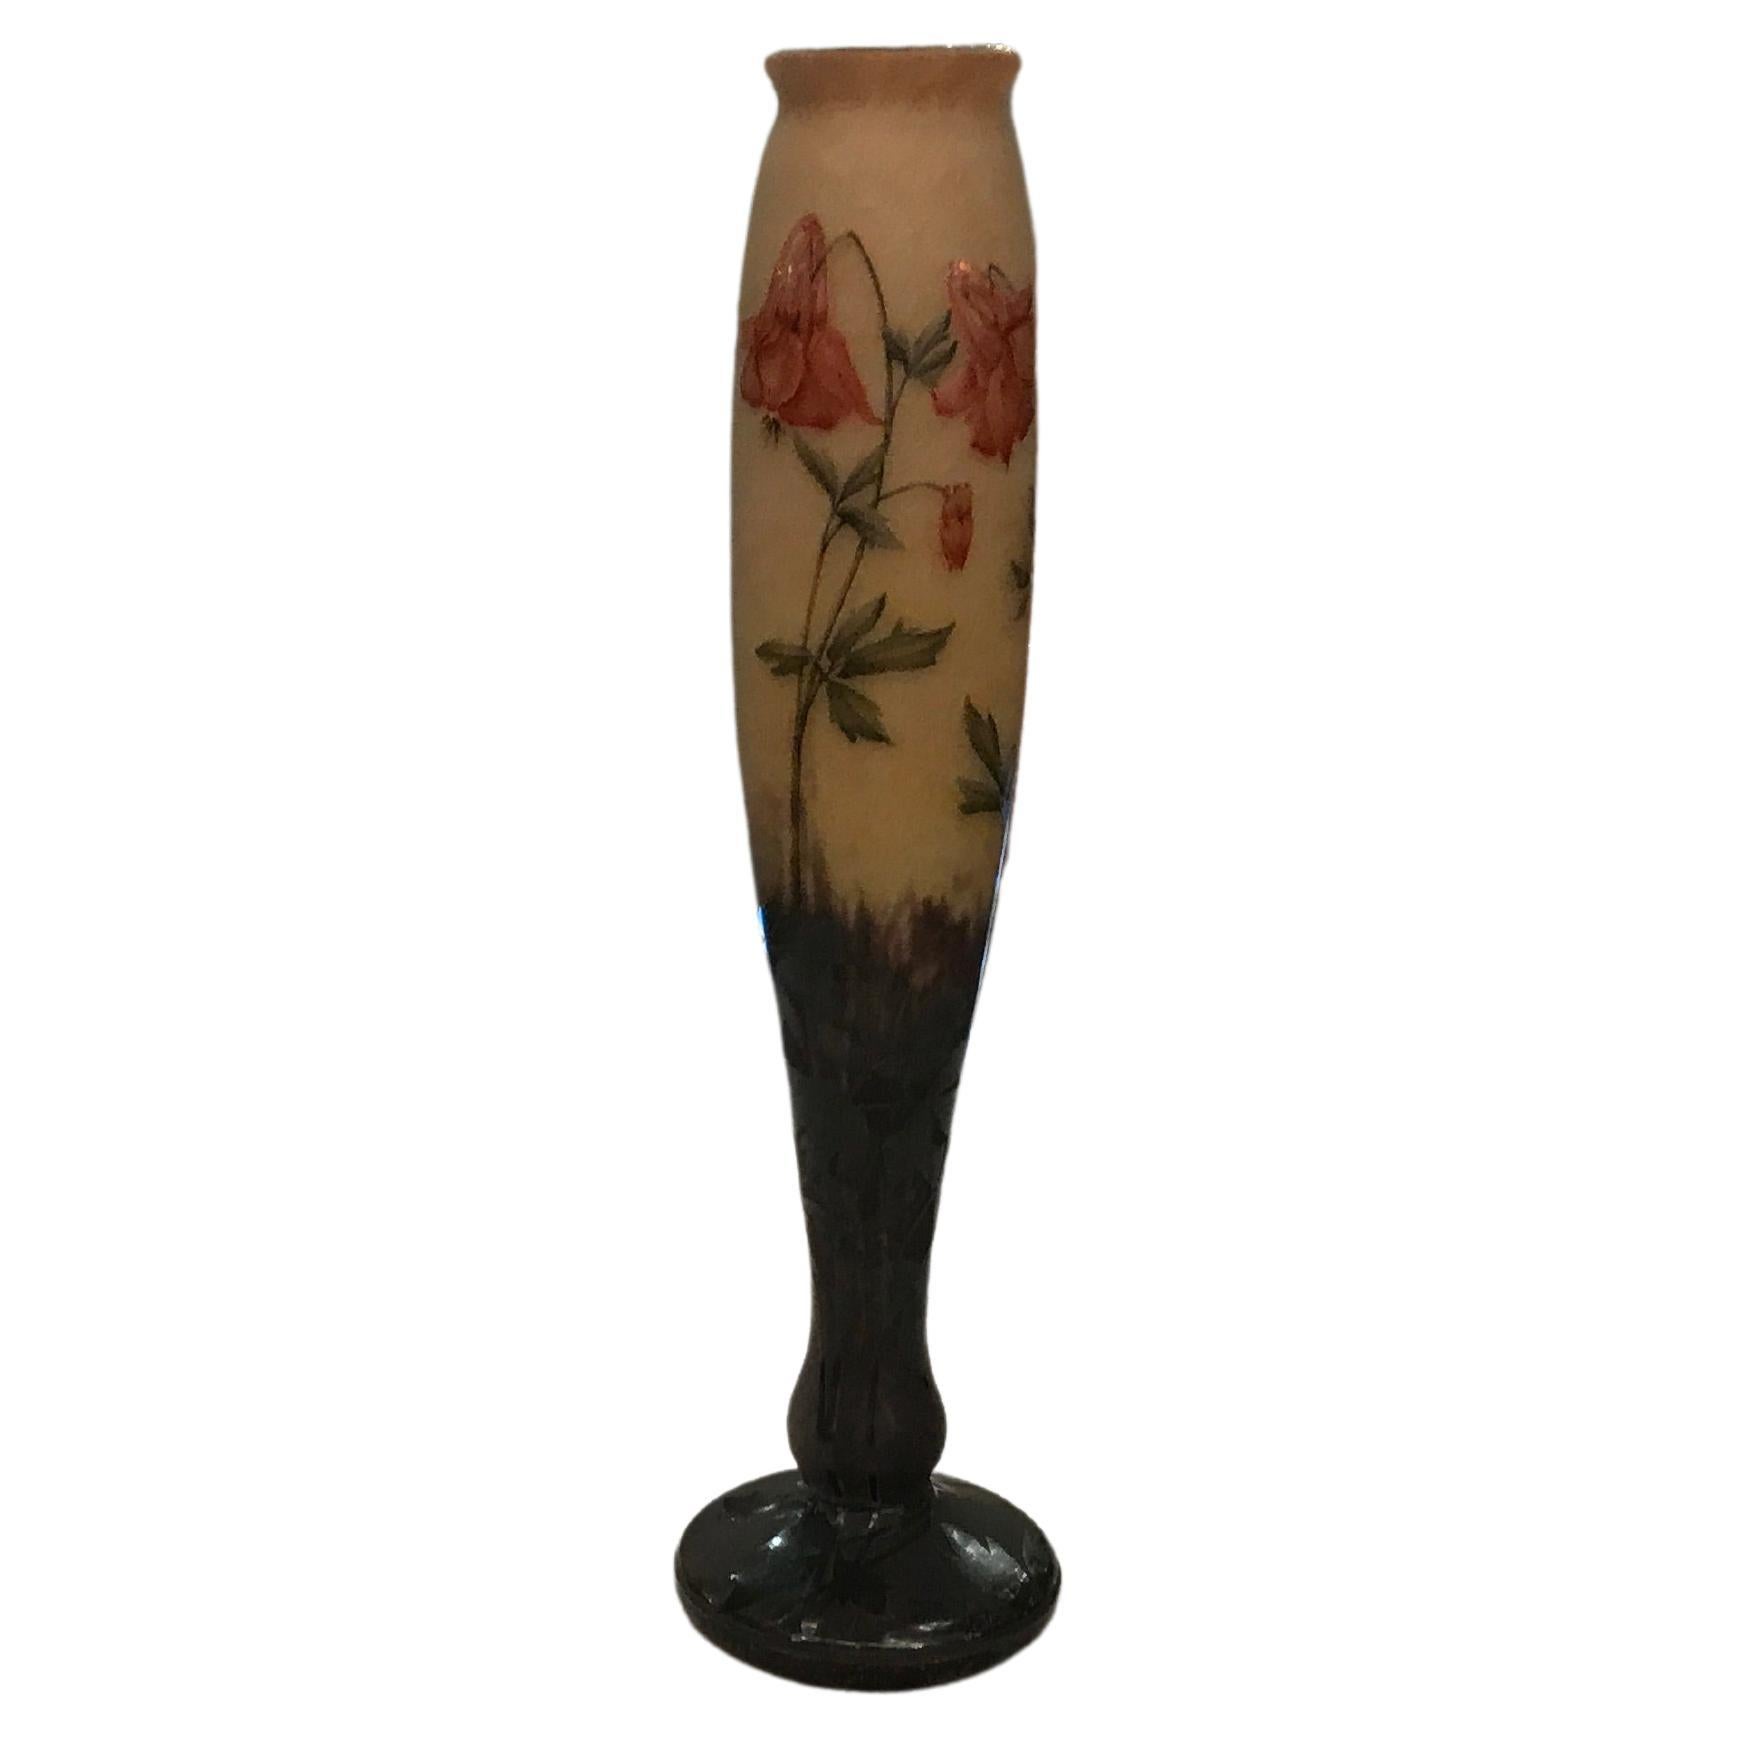 Vase, signiert: Daum Nancy, Frankreich, 1903, Stil: Jugendstil, Freiheit